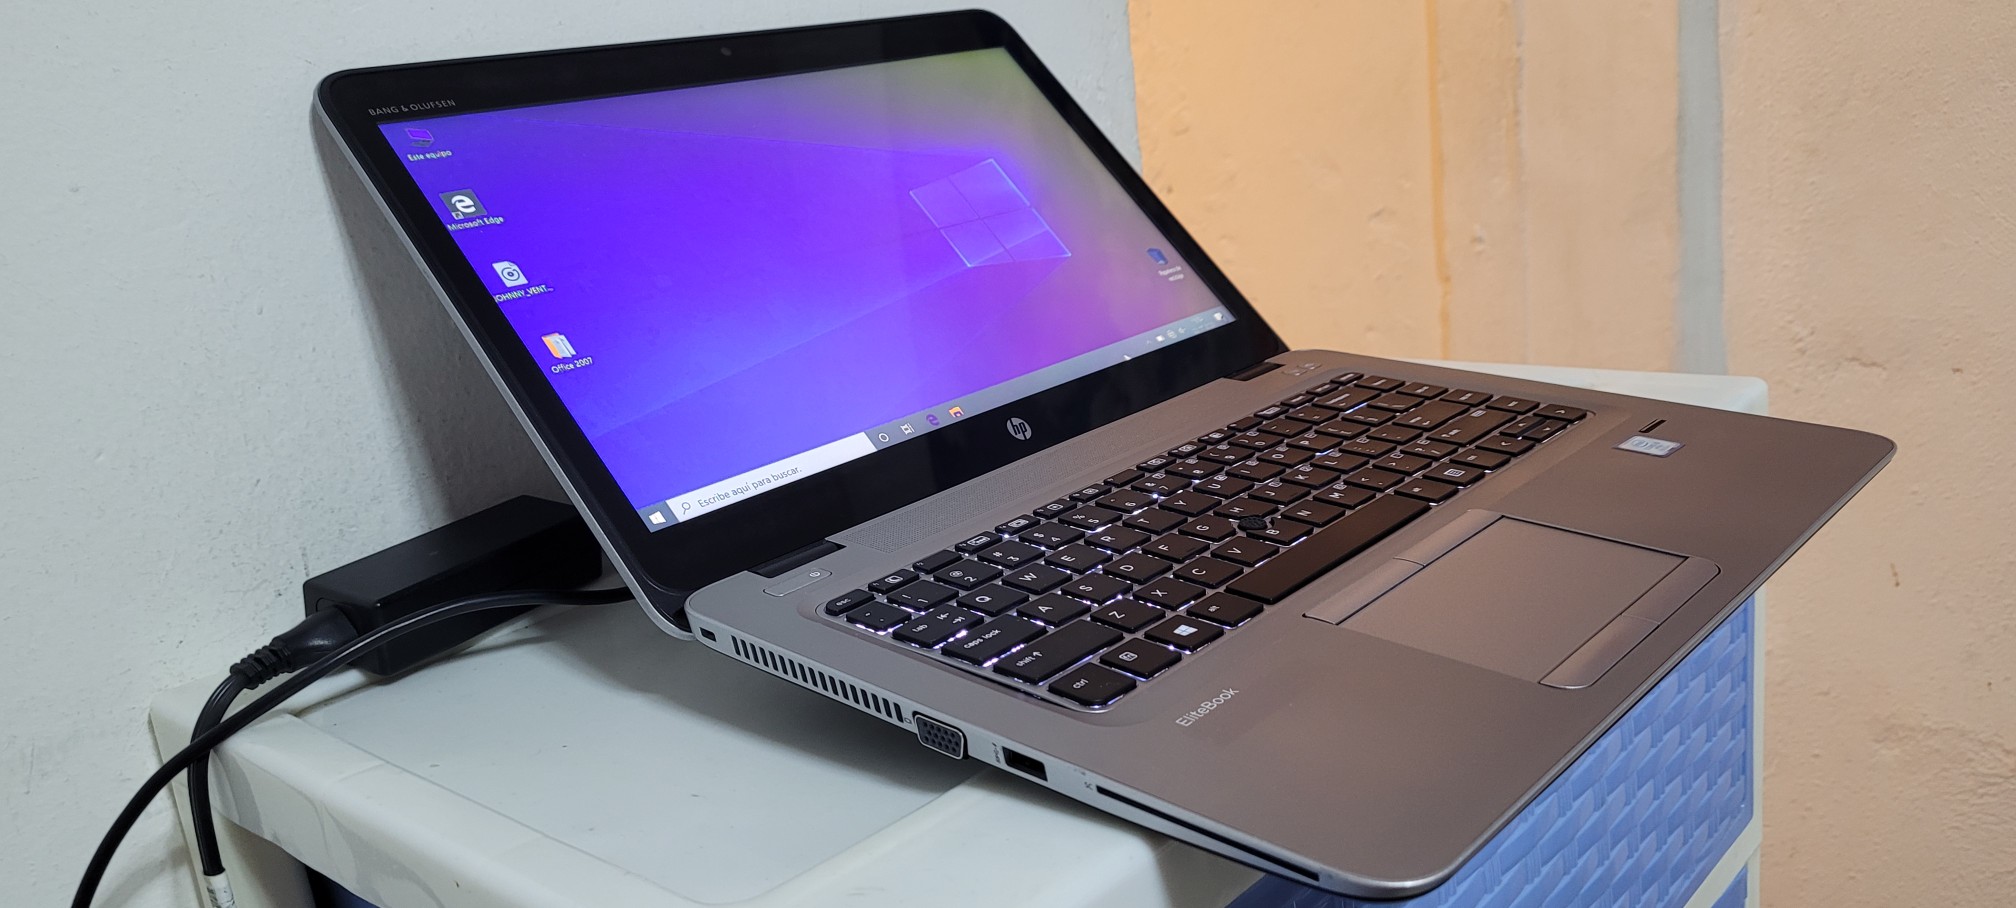 computadoras y laptops - Laptop hp Touch 14 Pulg Core i5 7ma Ram 8gb ddr4 Disco 128gb SSD Y 320gb full 1